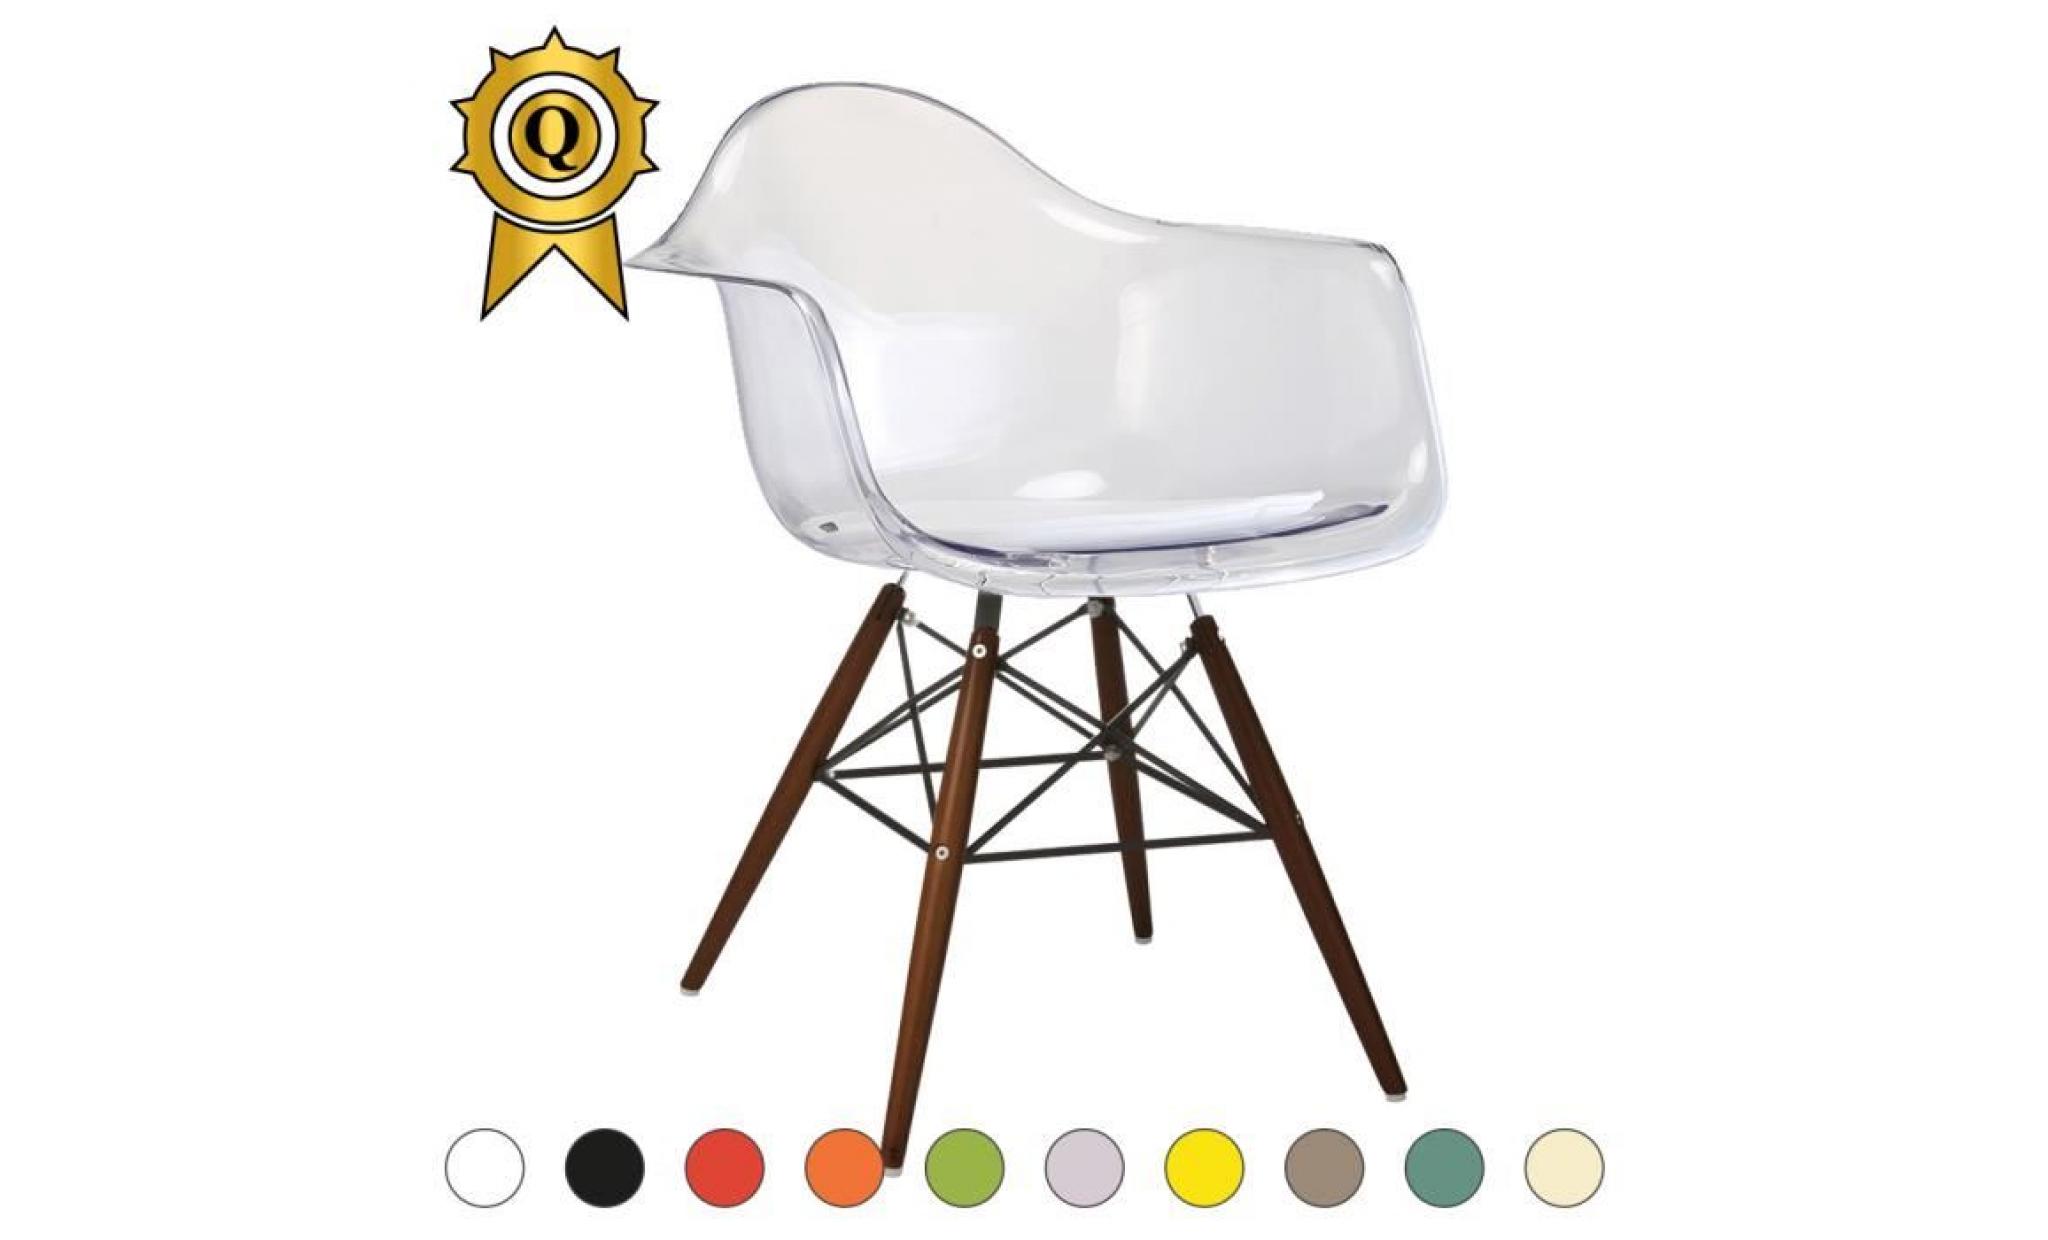 1 x fauteuil design retro style charles eames daw hauteur 48cm pieds en bois noir assise ivoire mobistyl®